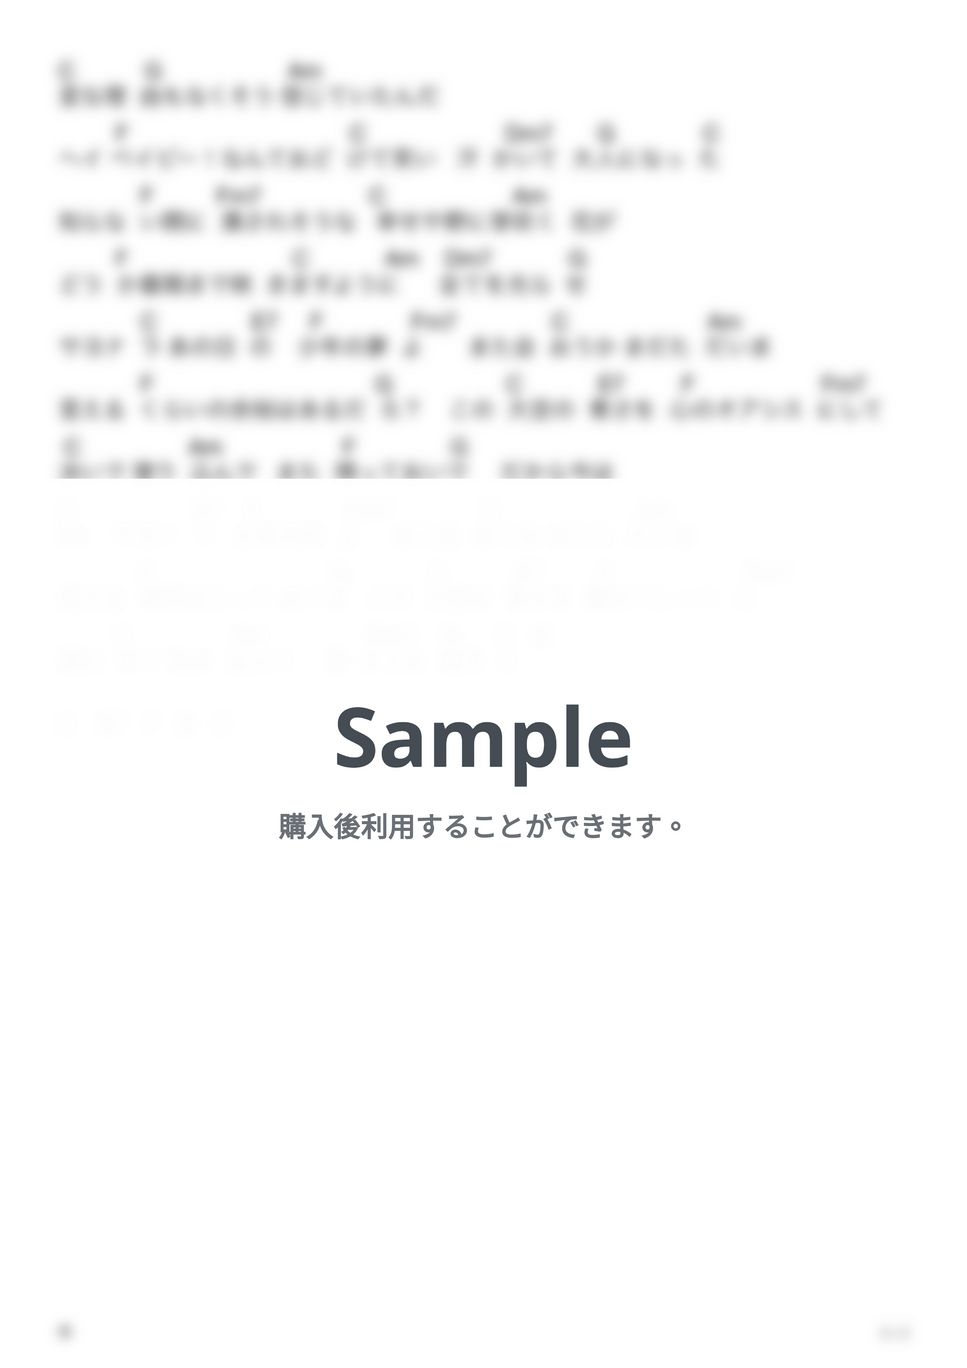 あいみょん - 葵 (弾き語りコード譜) by G's score